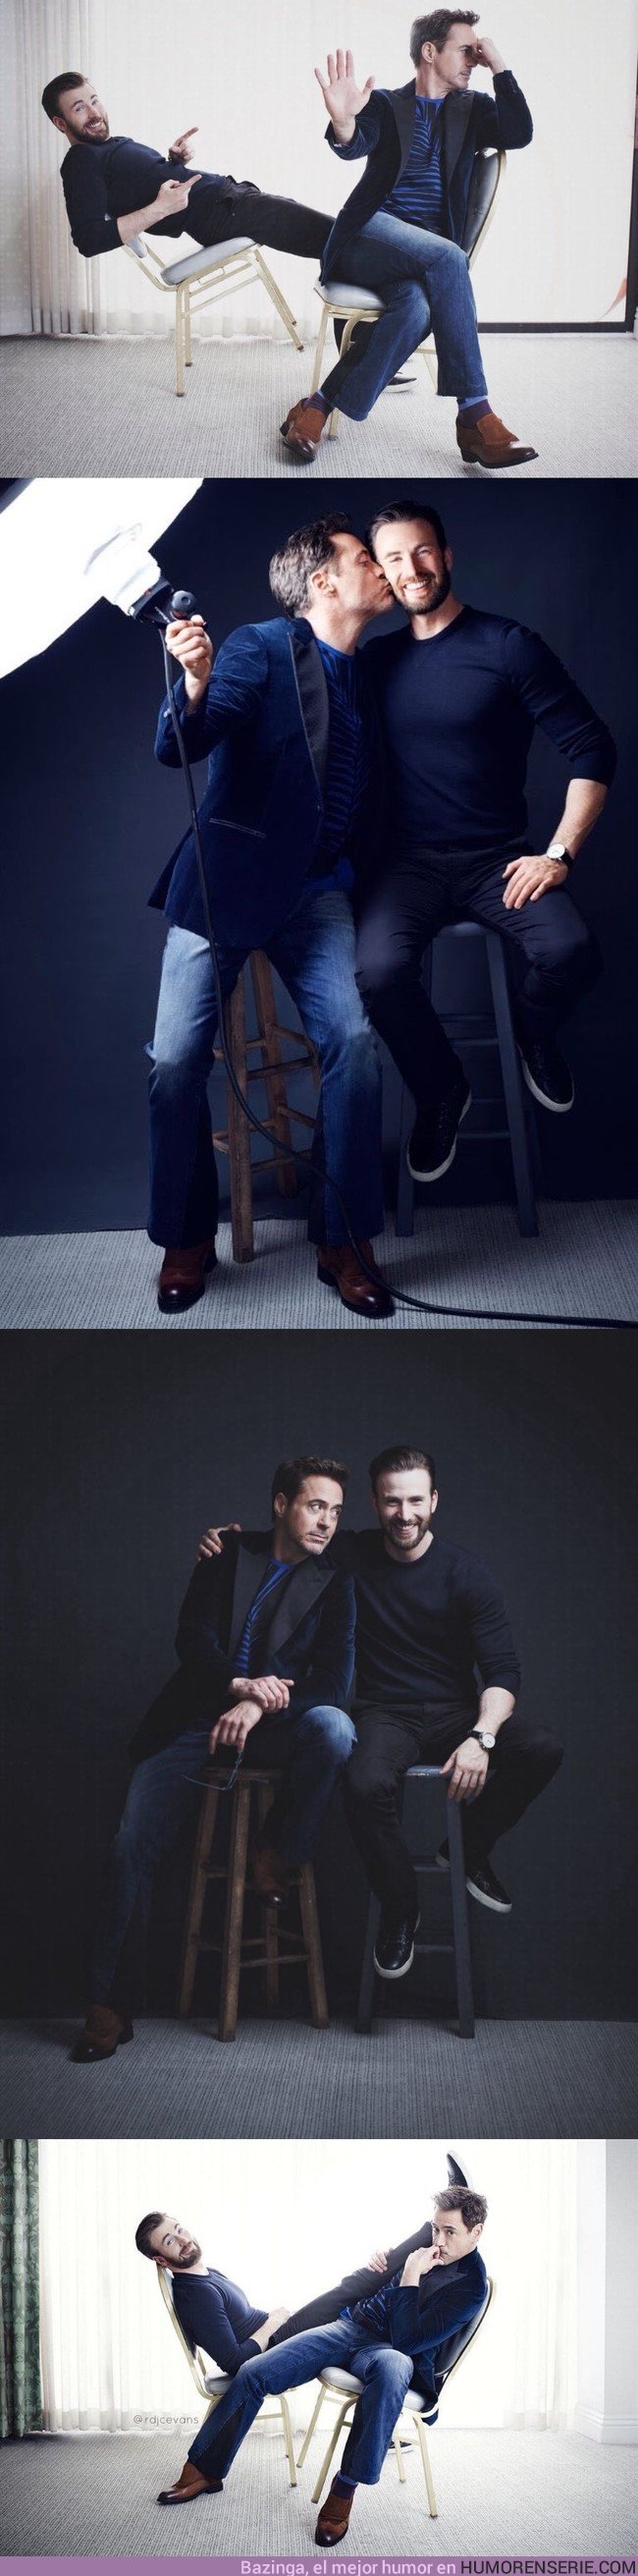 25804 - GALERÍA: Robert Downey Jr y Chris Evans protagonizan la sesión de fotos más épica en un mucho tiempo